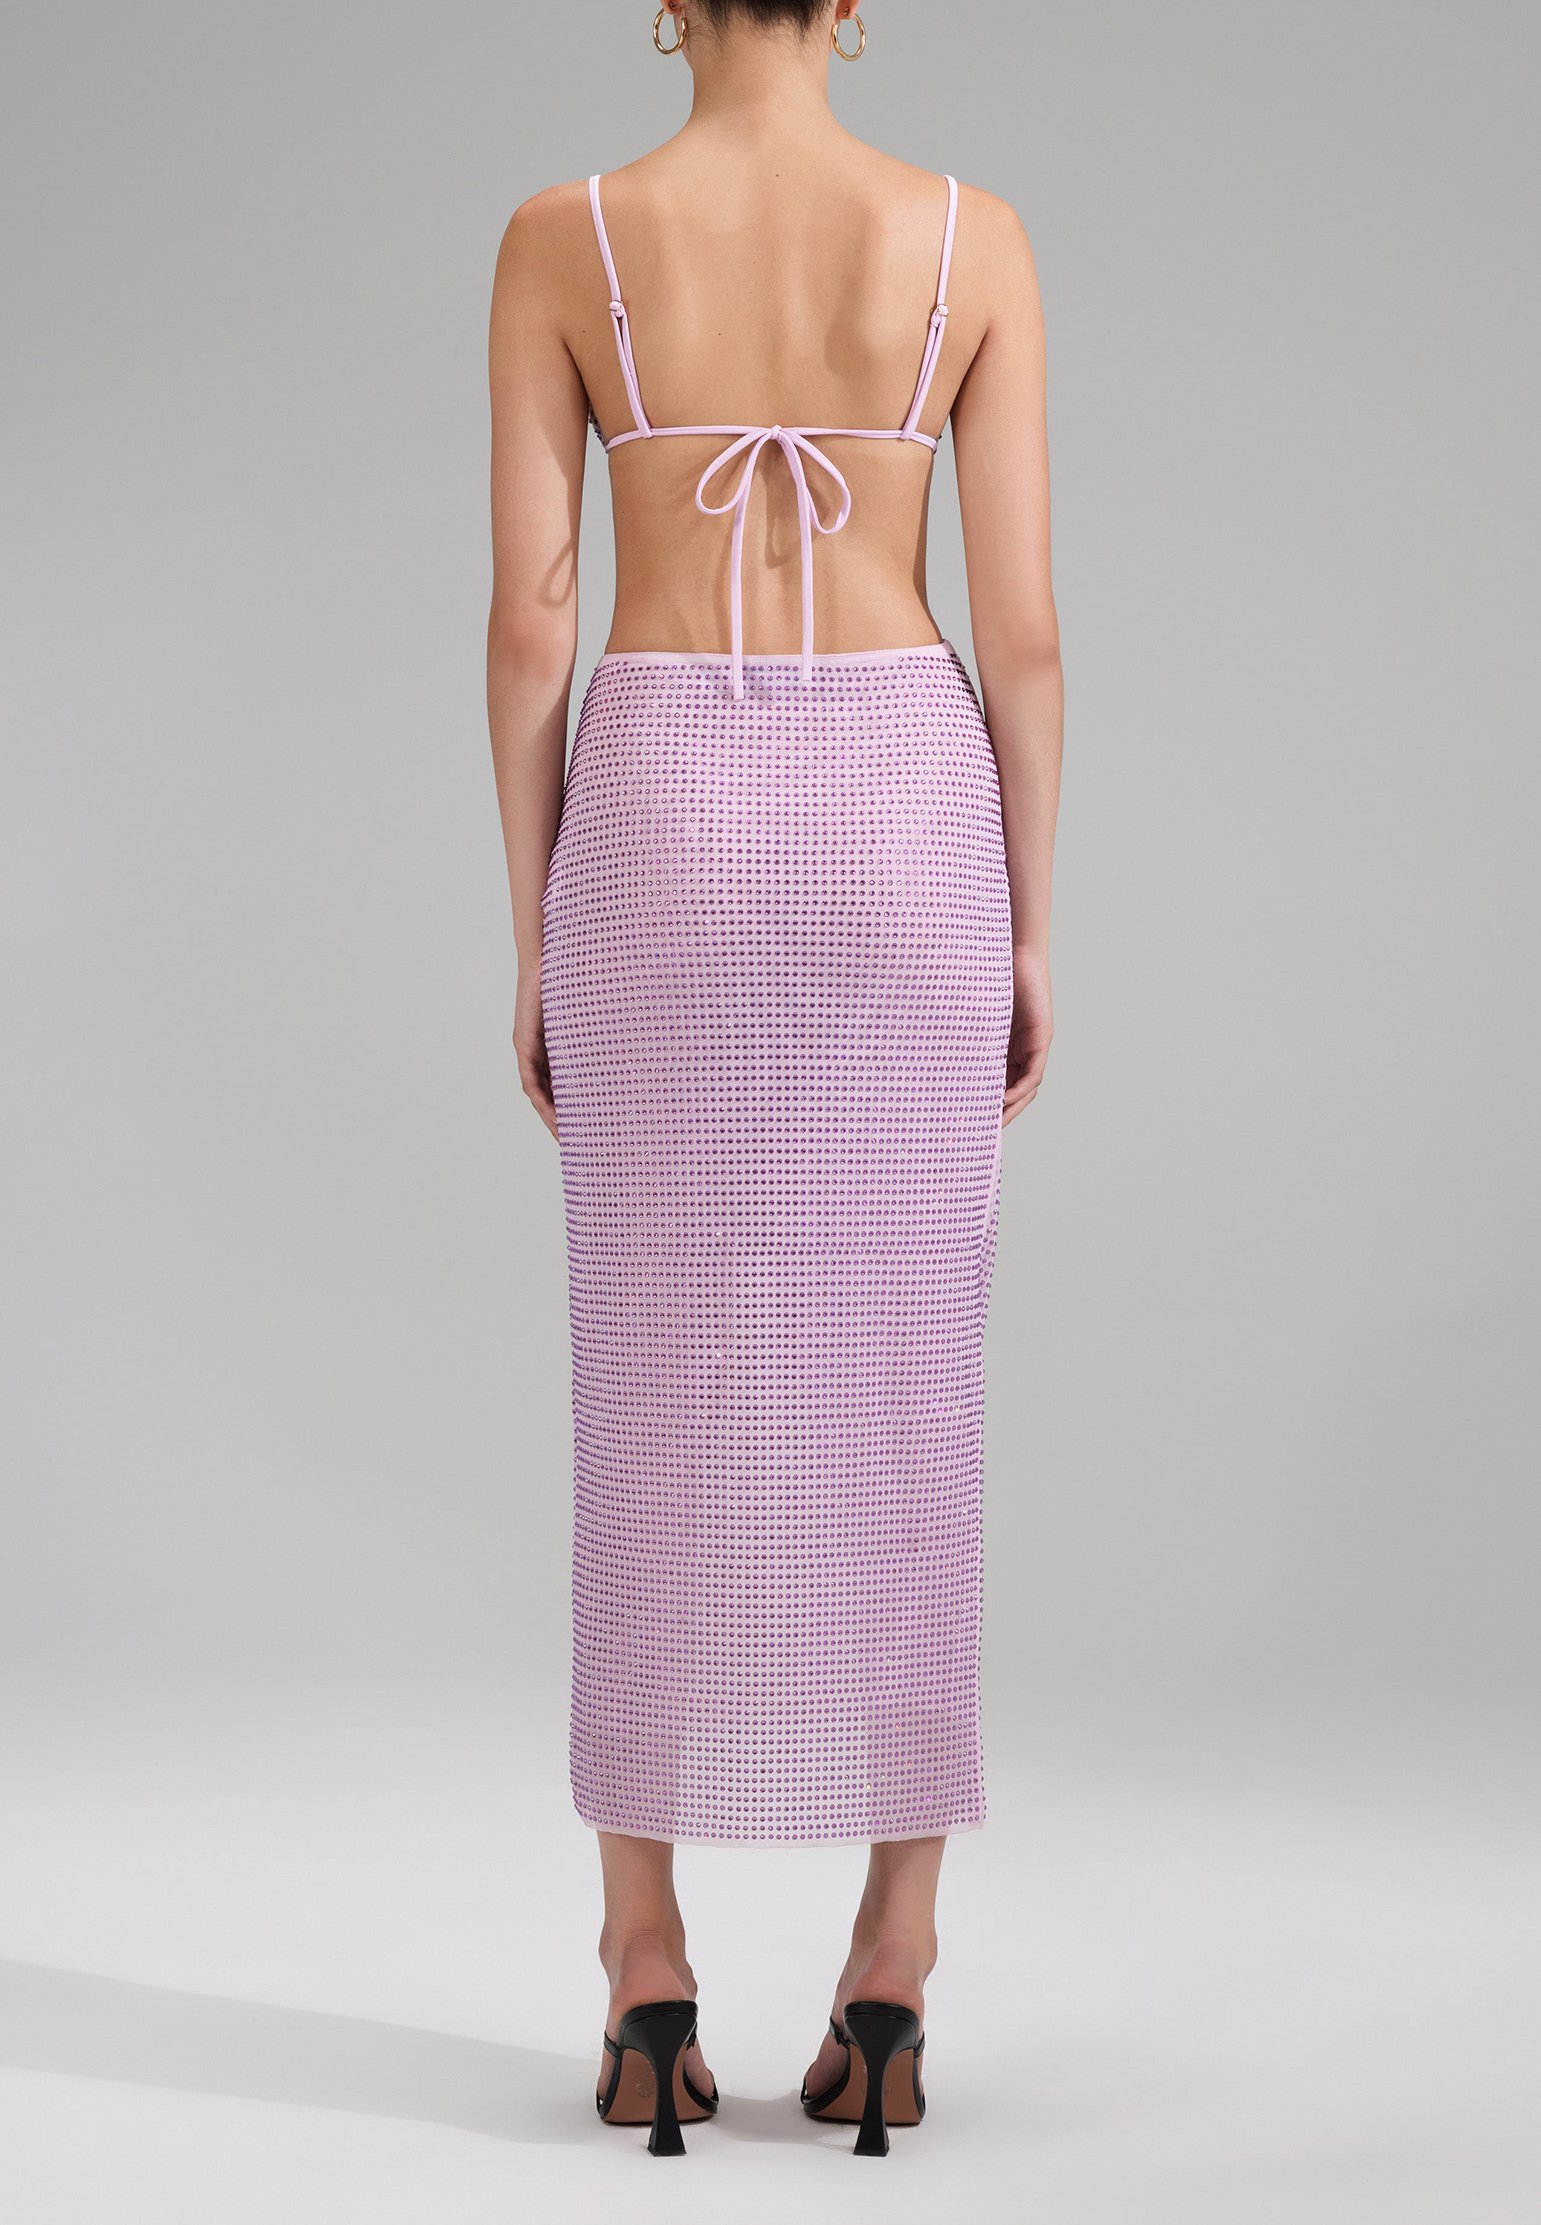 Bikini top SELF-PORTRAIT Color: lilac (Code: 2243) in online store Allure